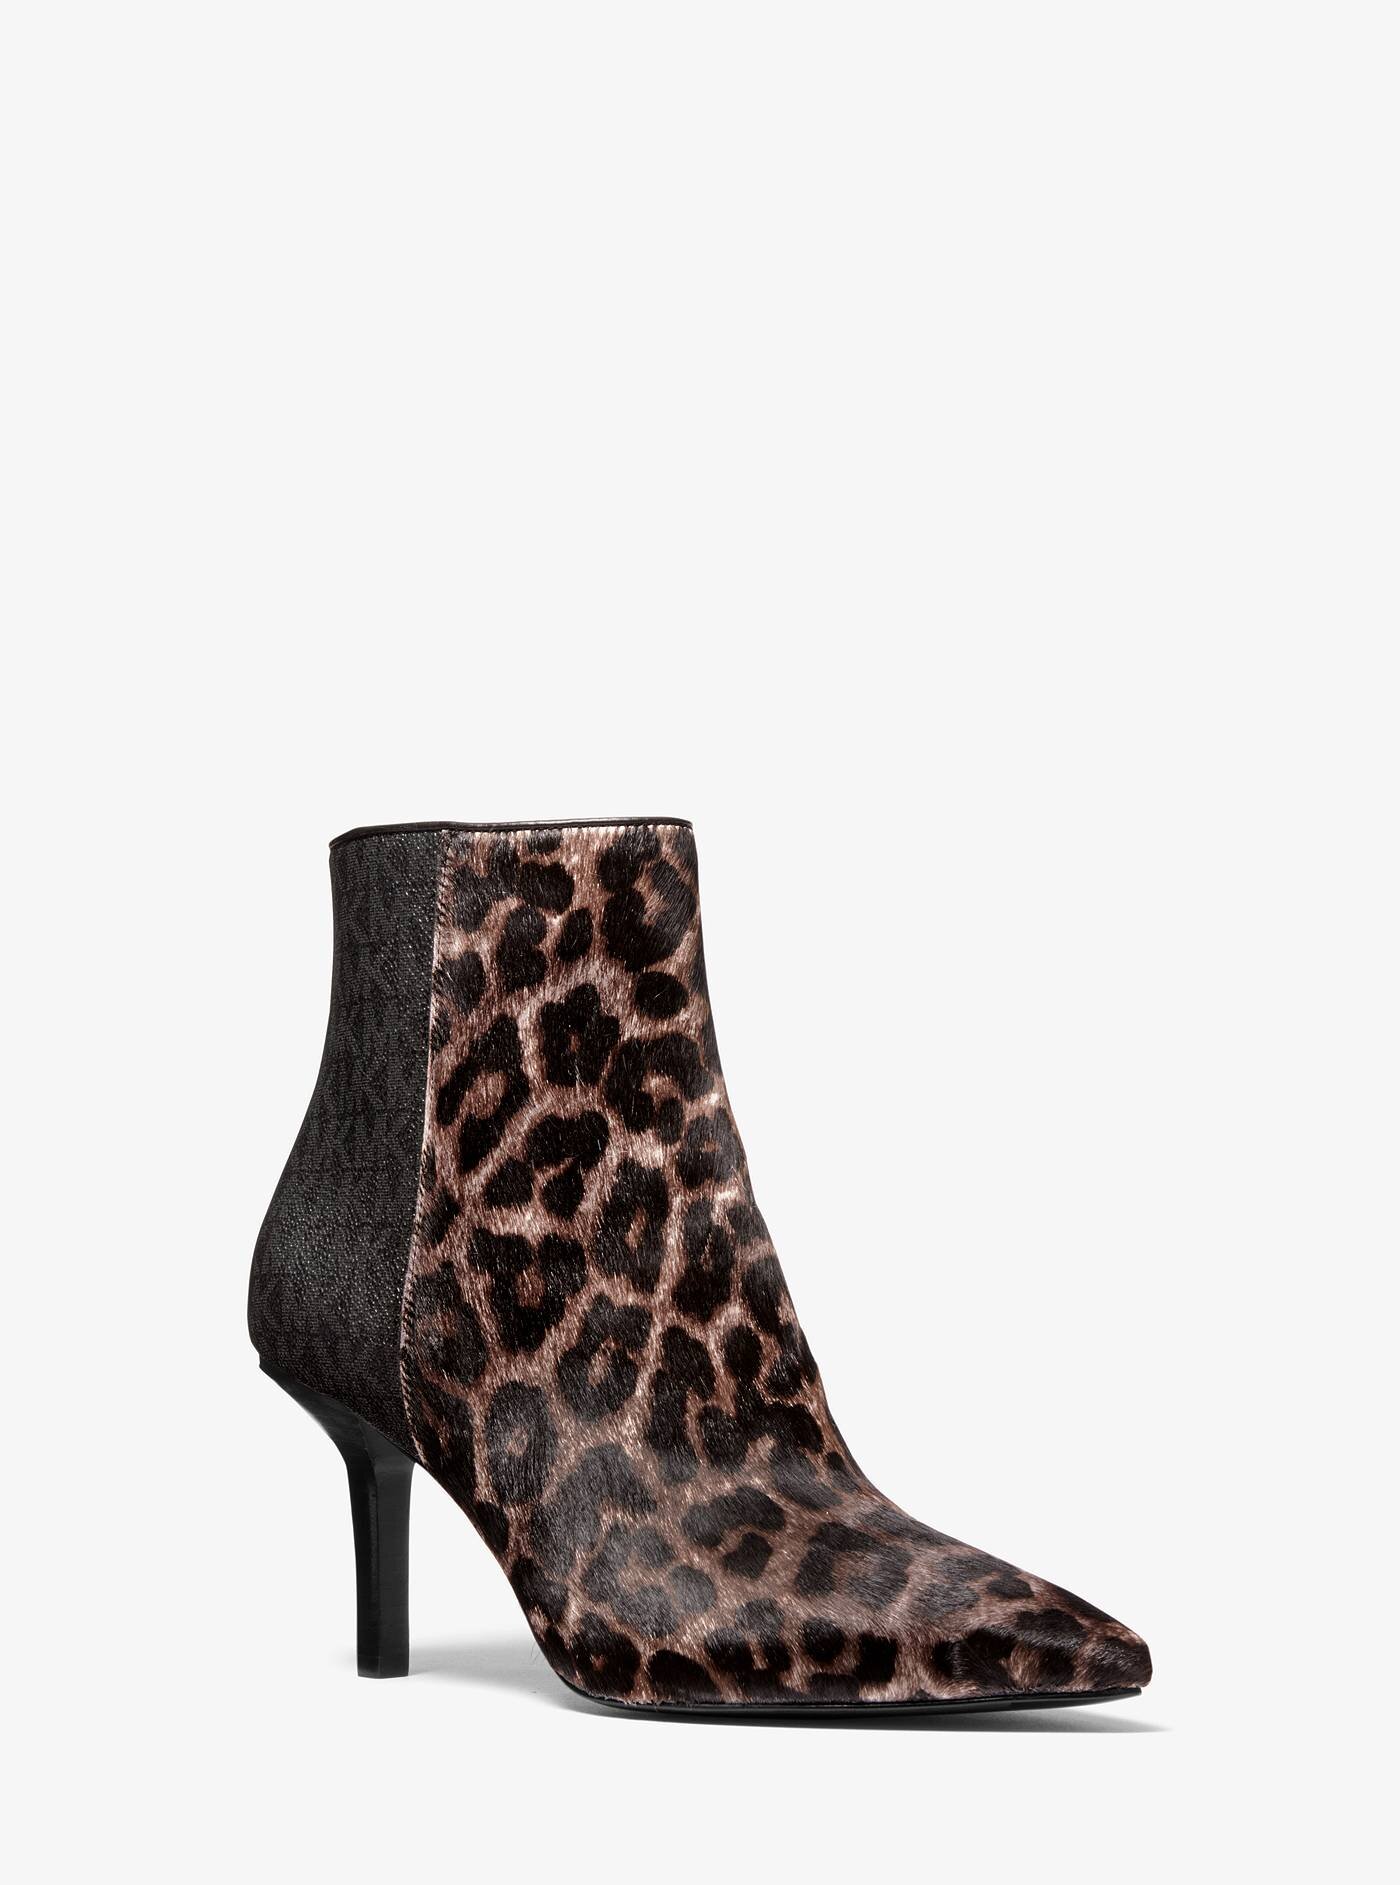 michael kors leopard ankle boots